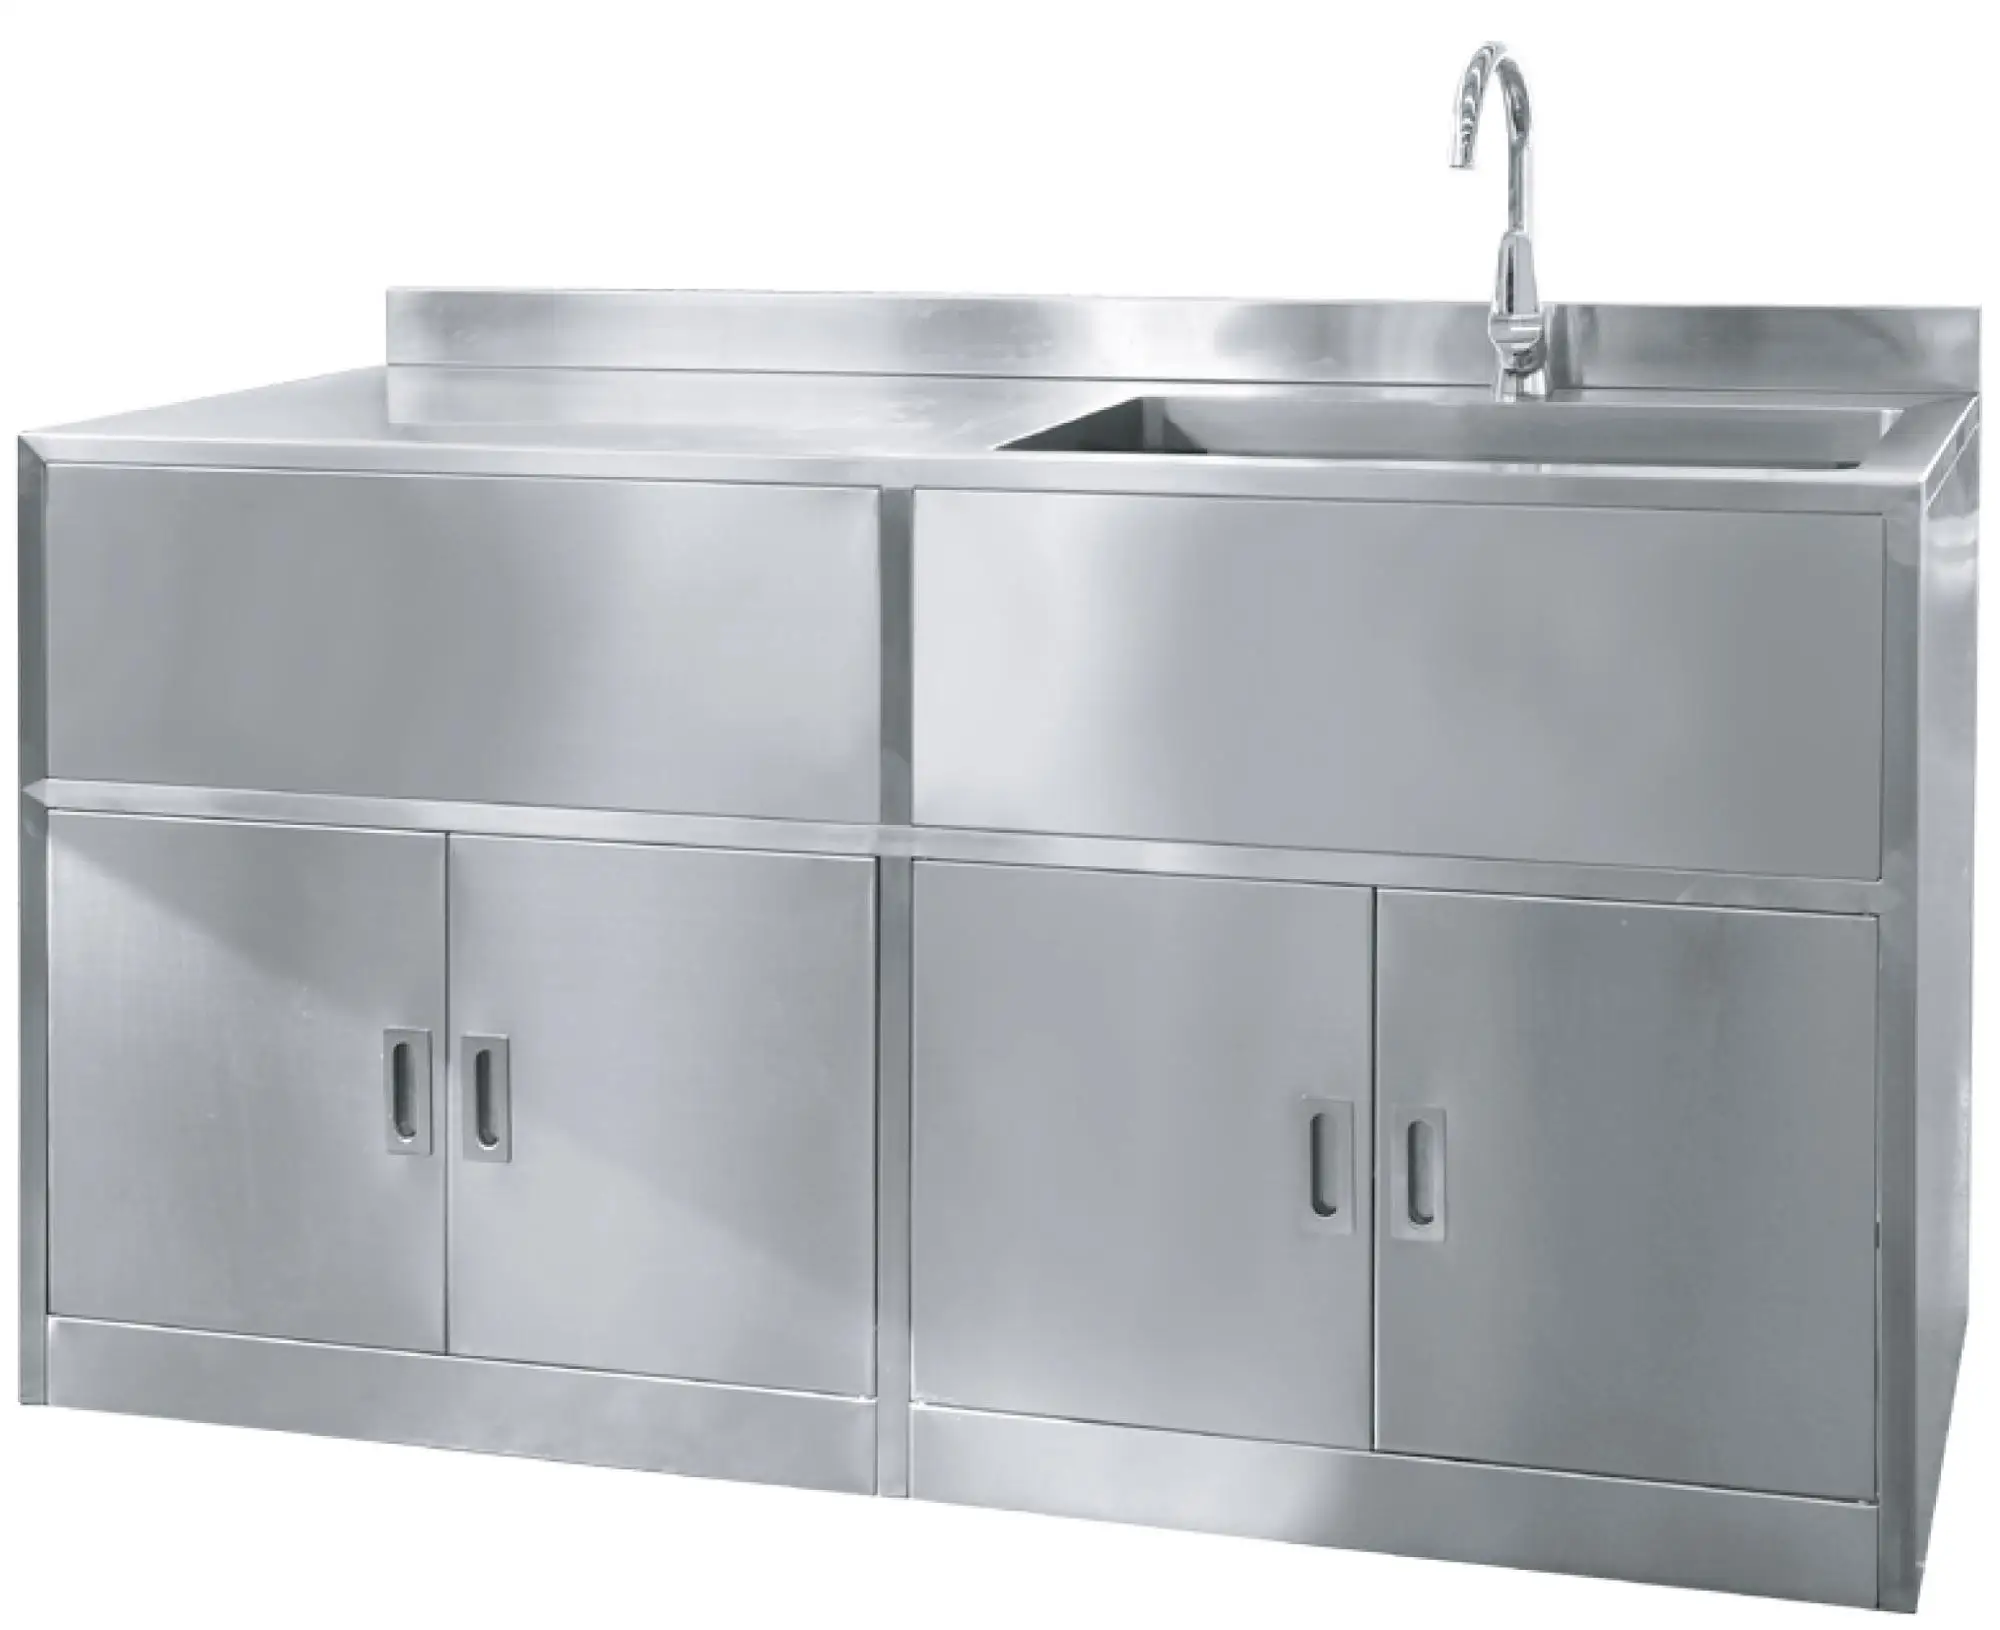 industrial kitchen sink units